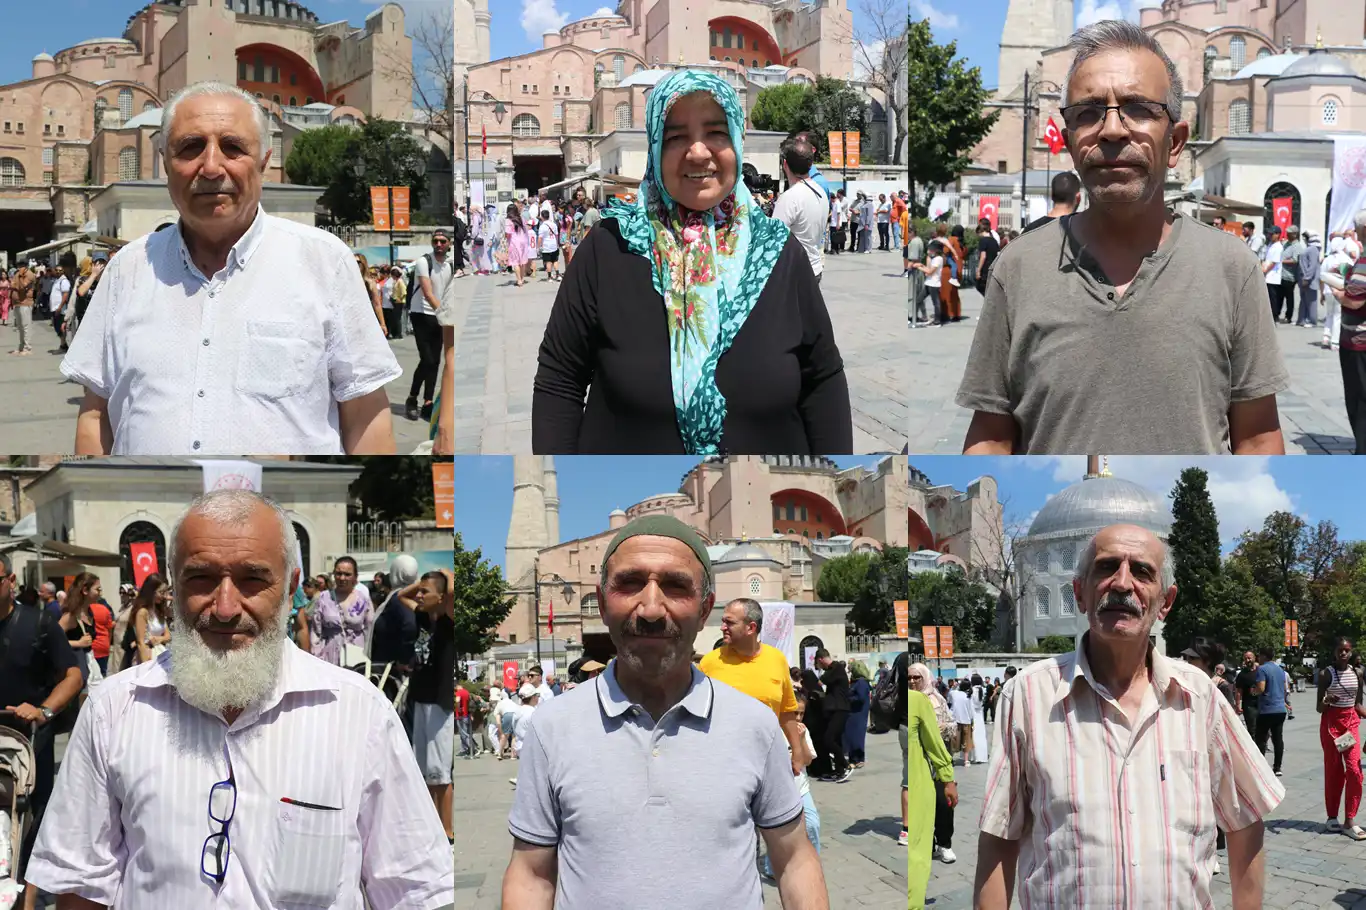 İstanbullular, Ayasofya'dan sonra Mescid-i Aksa'nın da özgürlüğüne kavuşmasını bekliyor